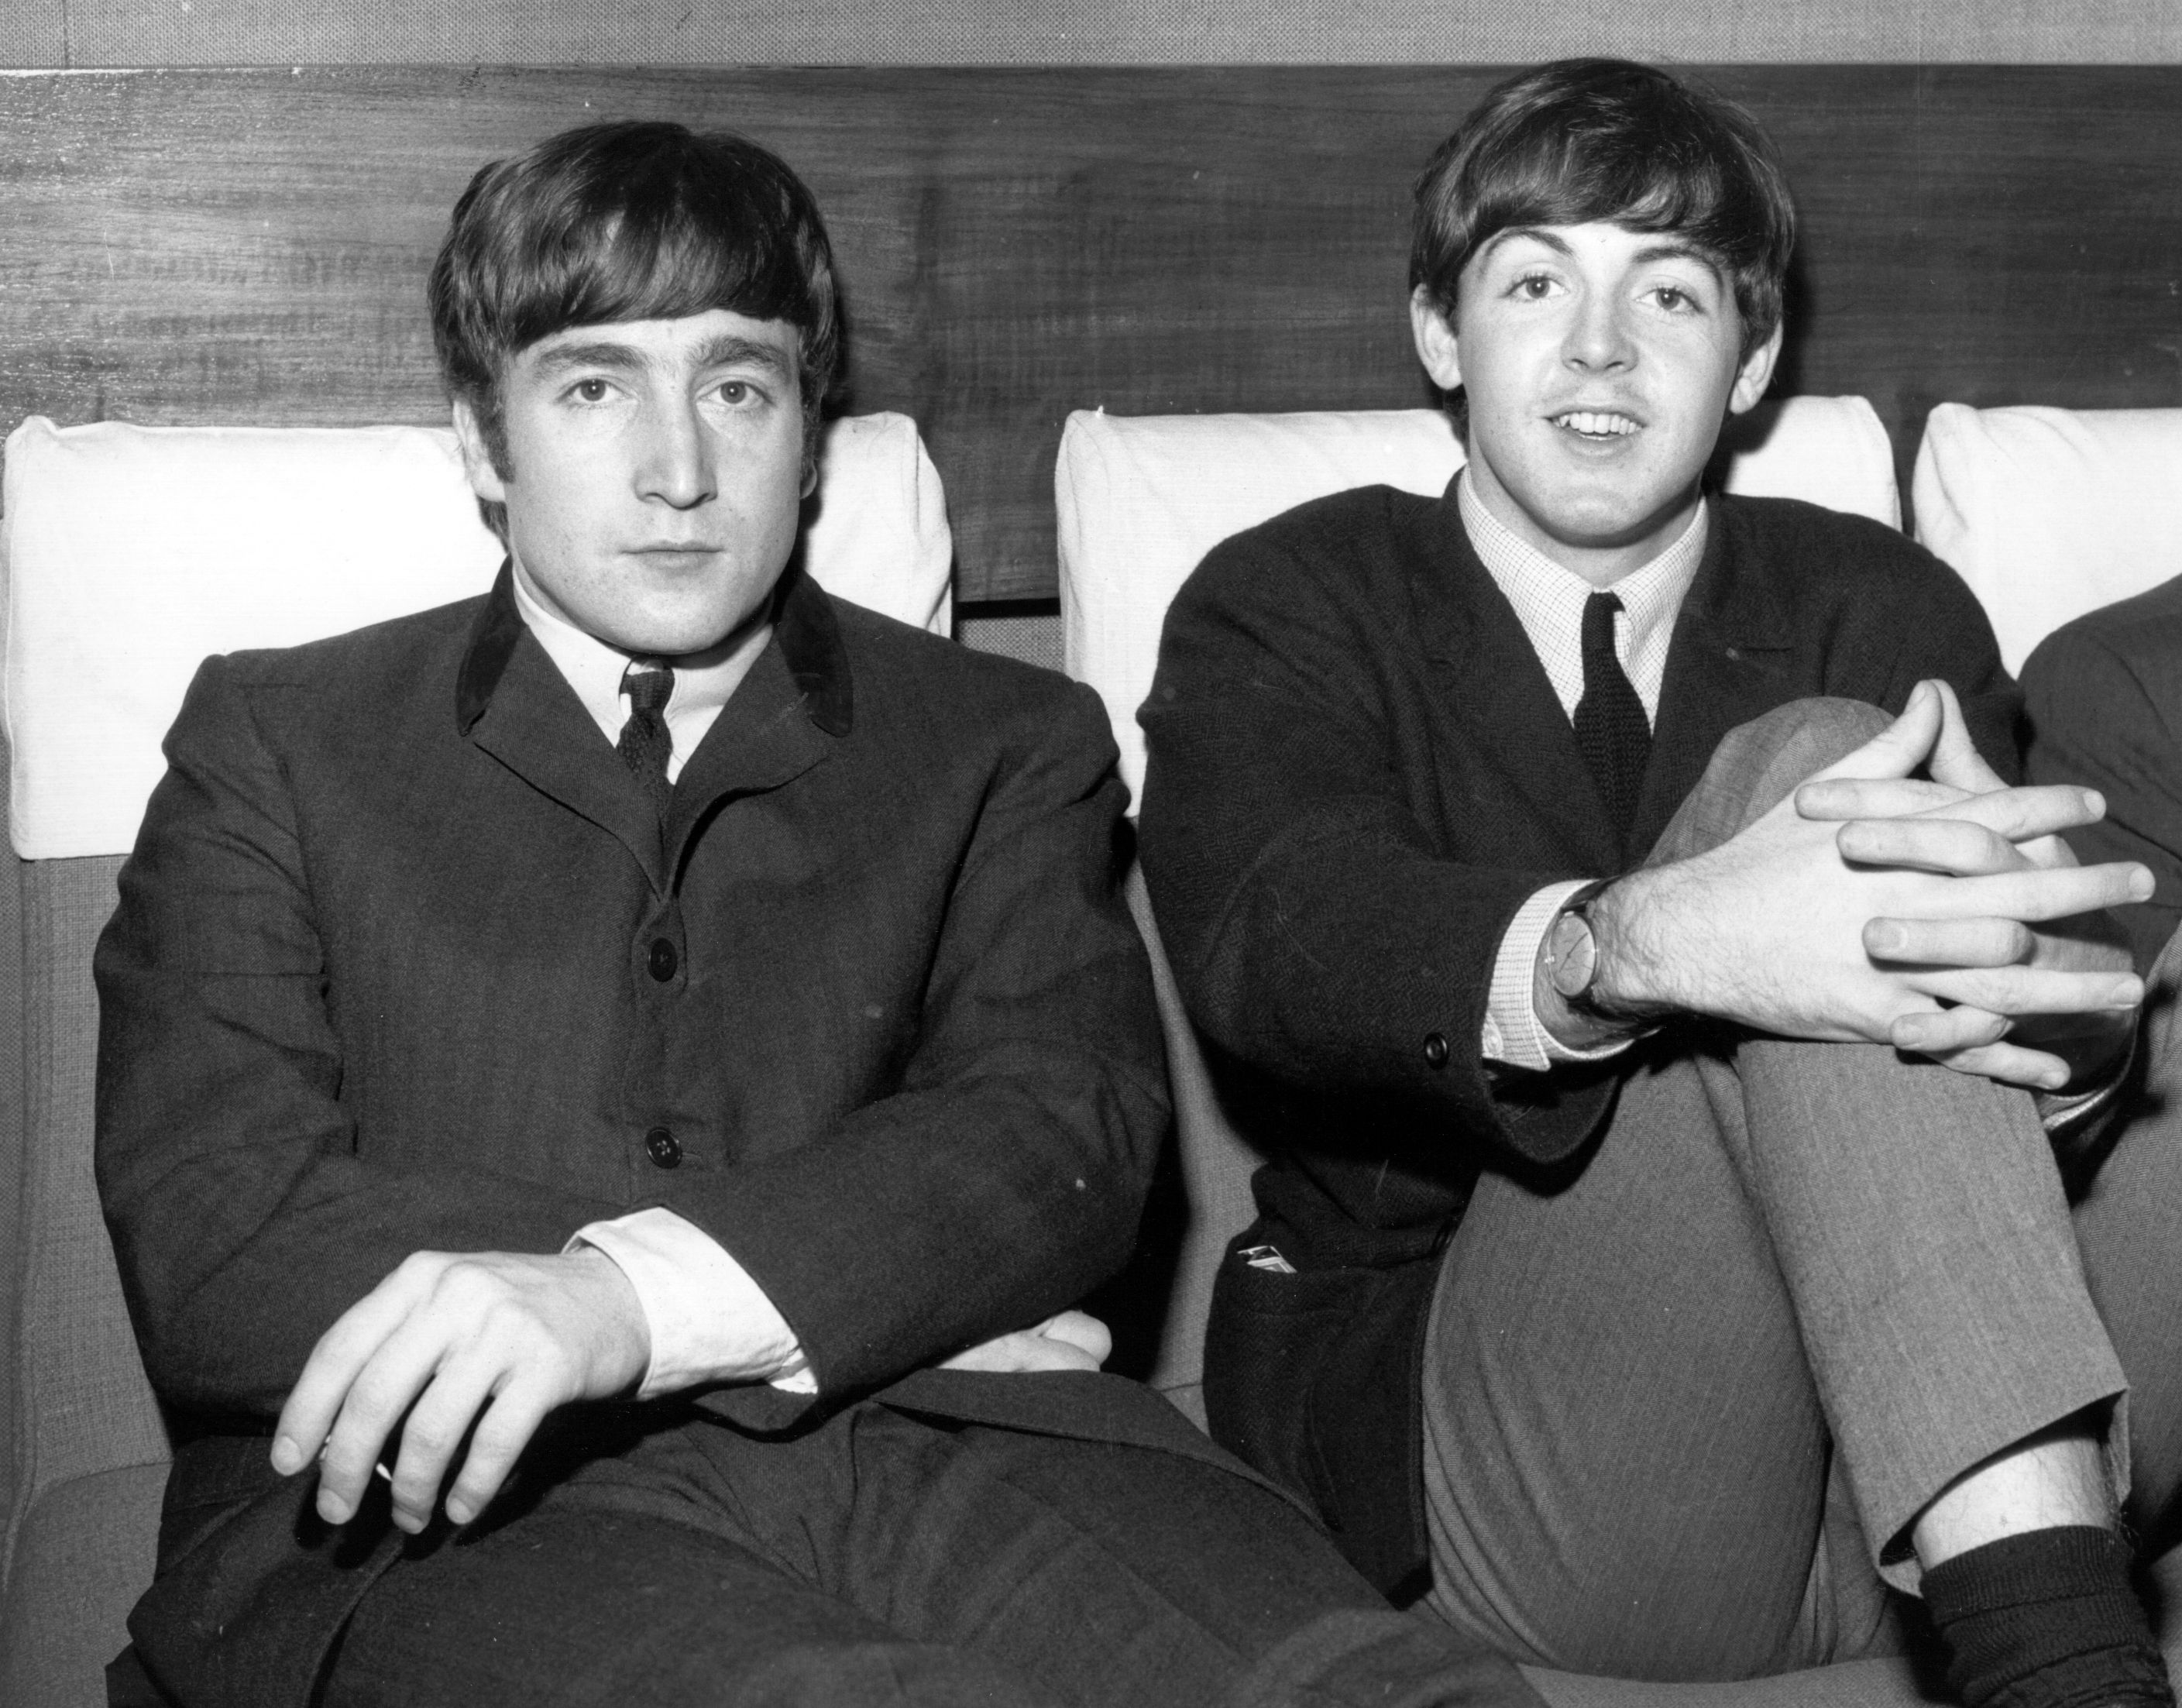 John Lennon and Paul McCartney in black-and-white